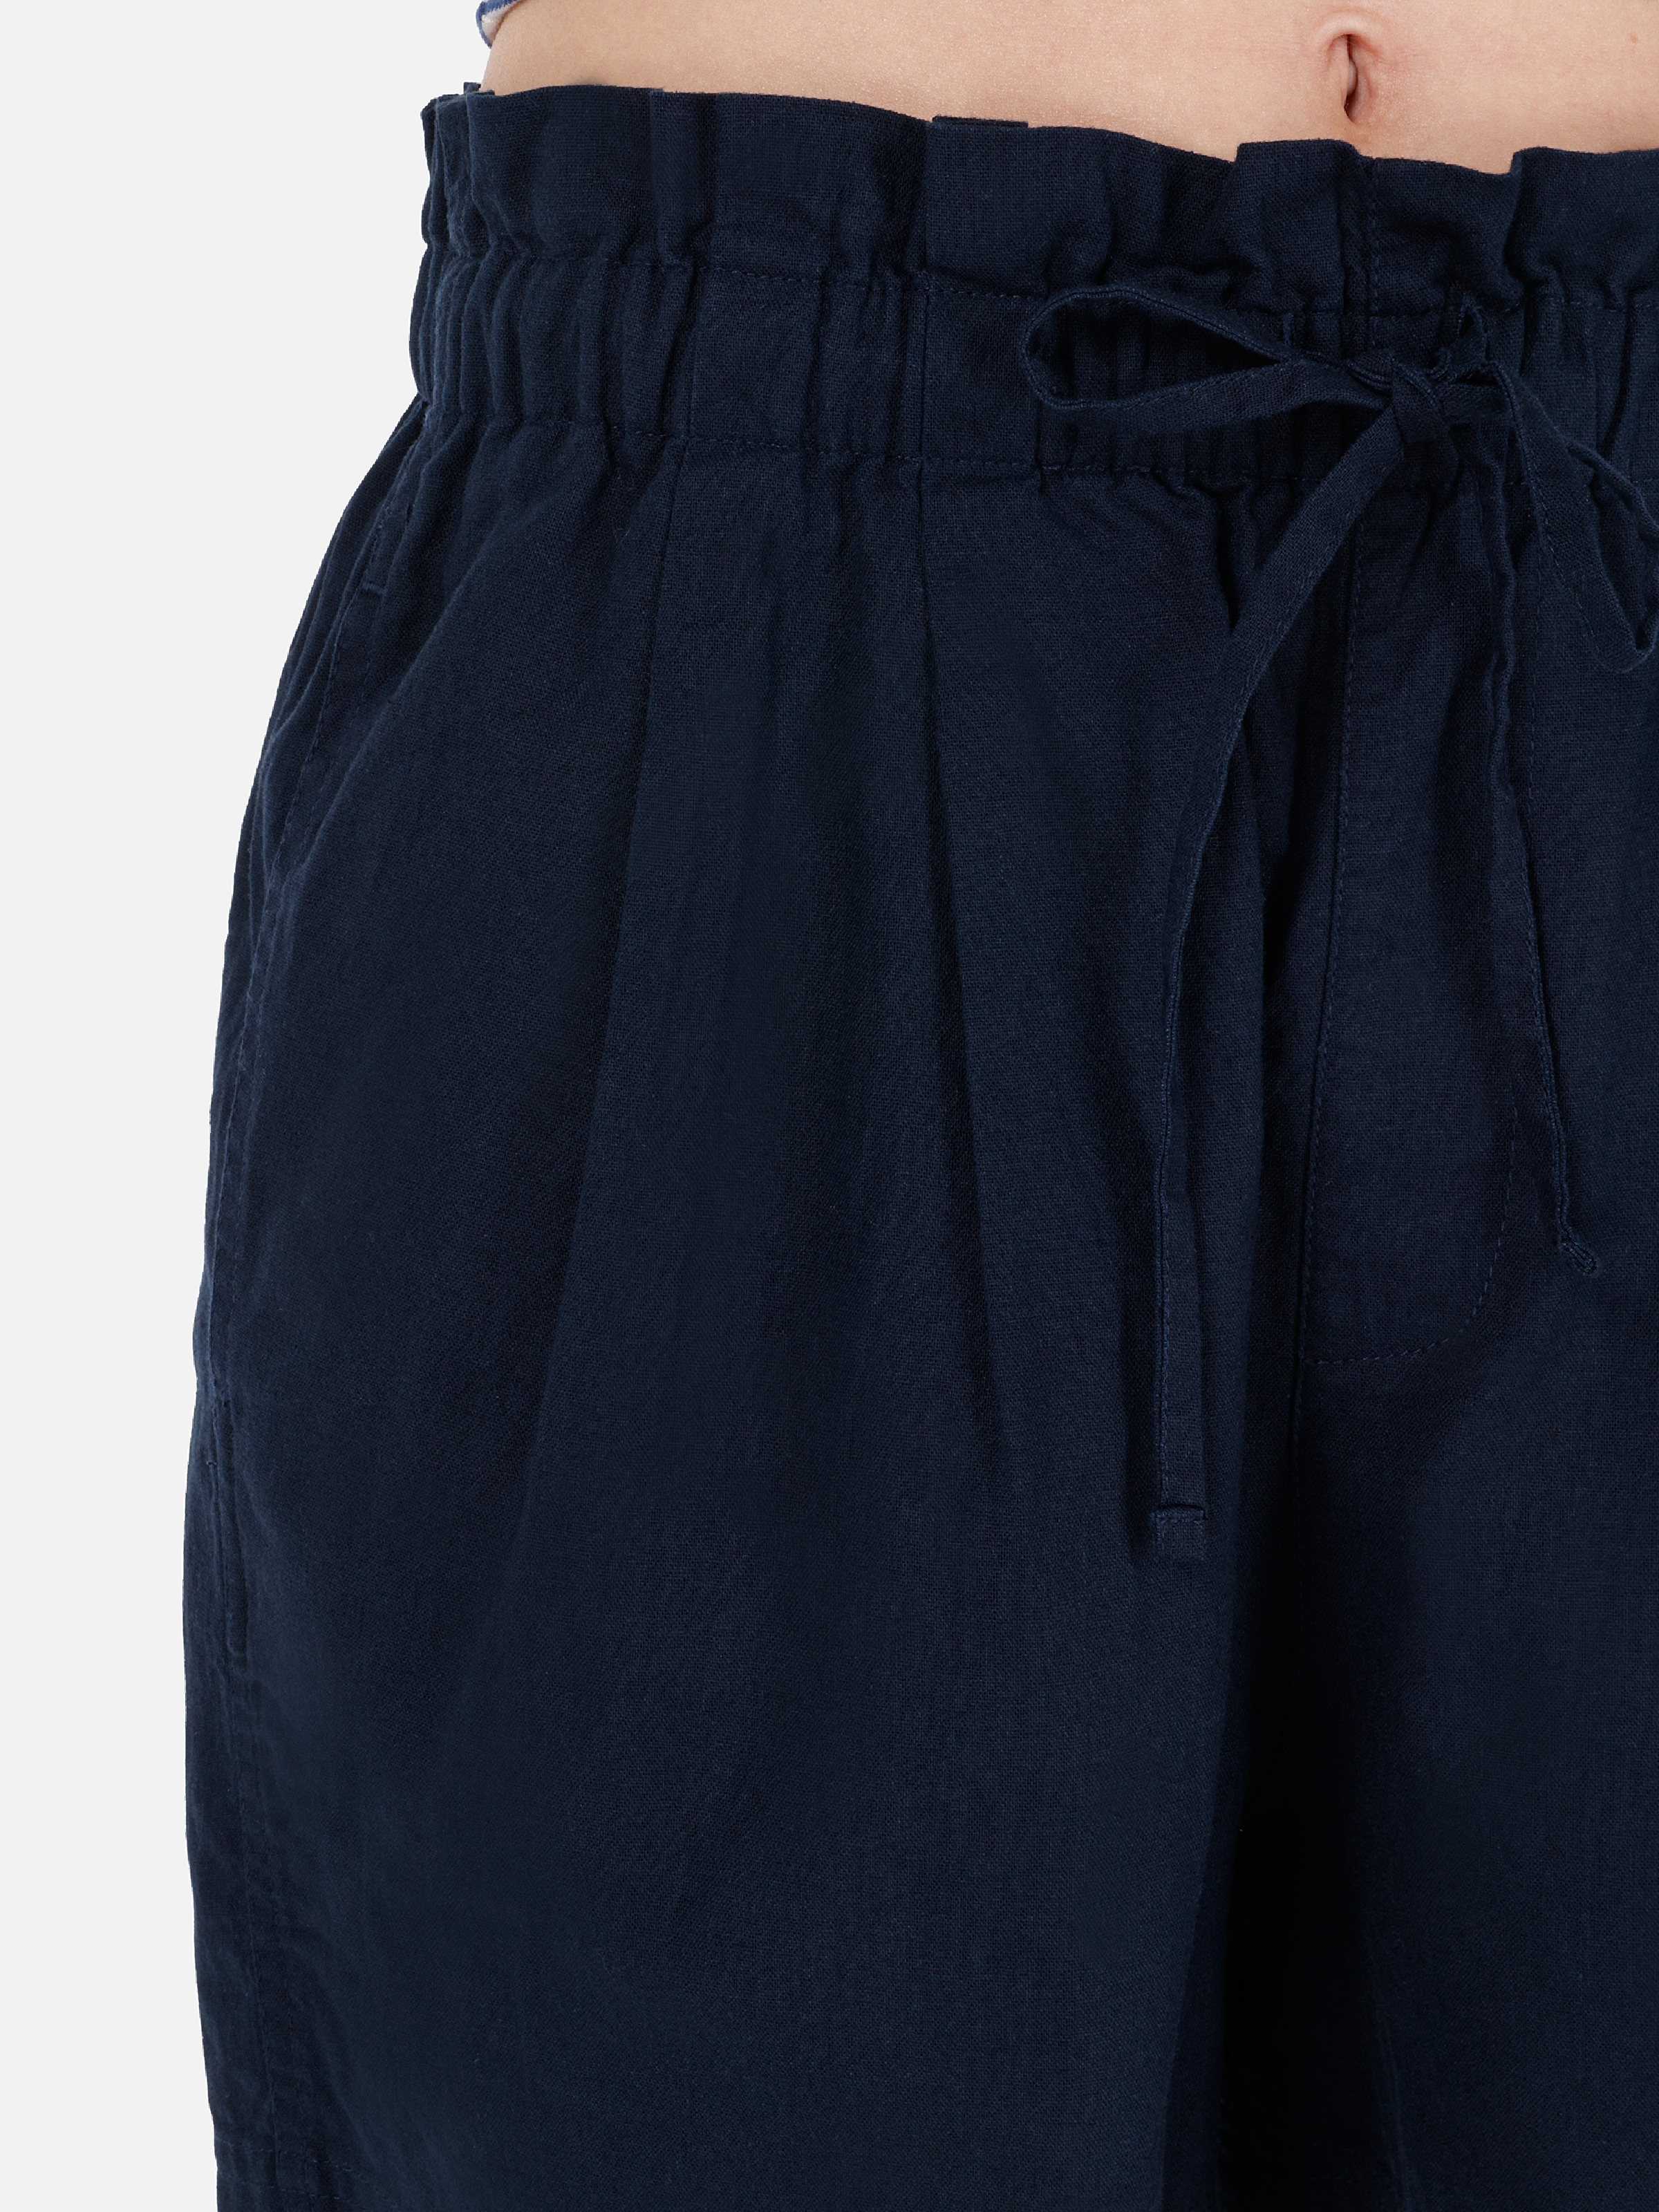 Afișați detalii pentru Short / Pantaloni Scurti De Dama Albastru Marin Regular Fit  